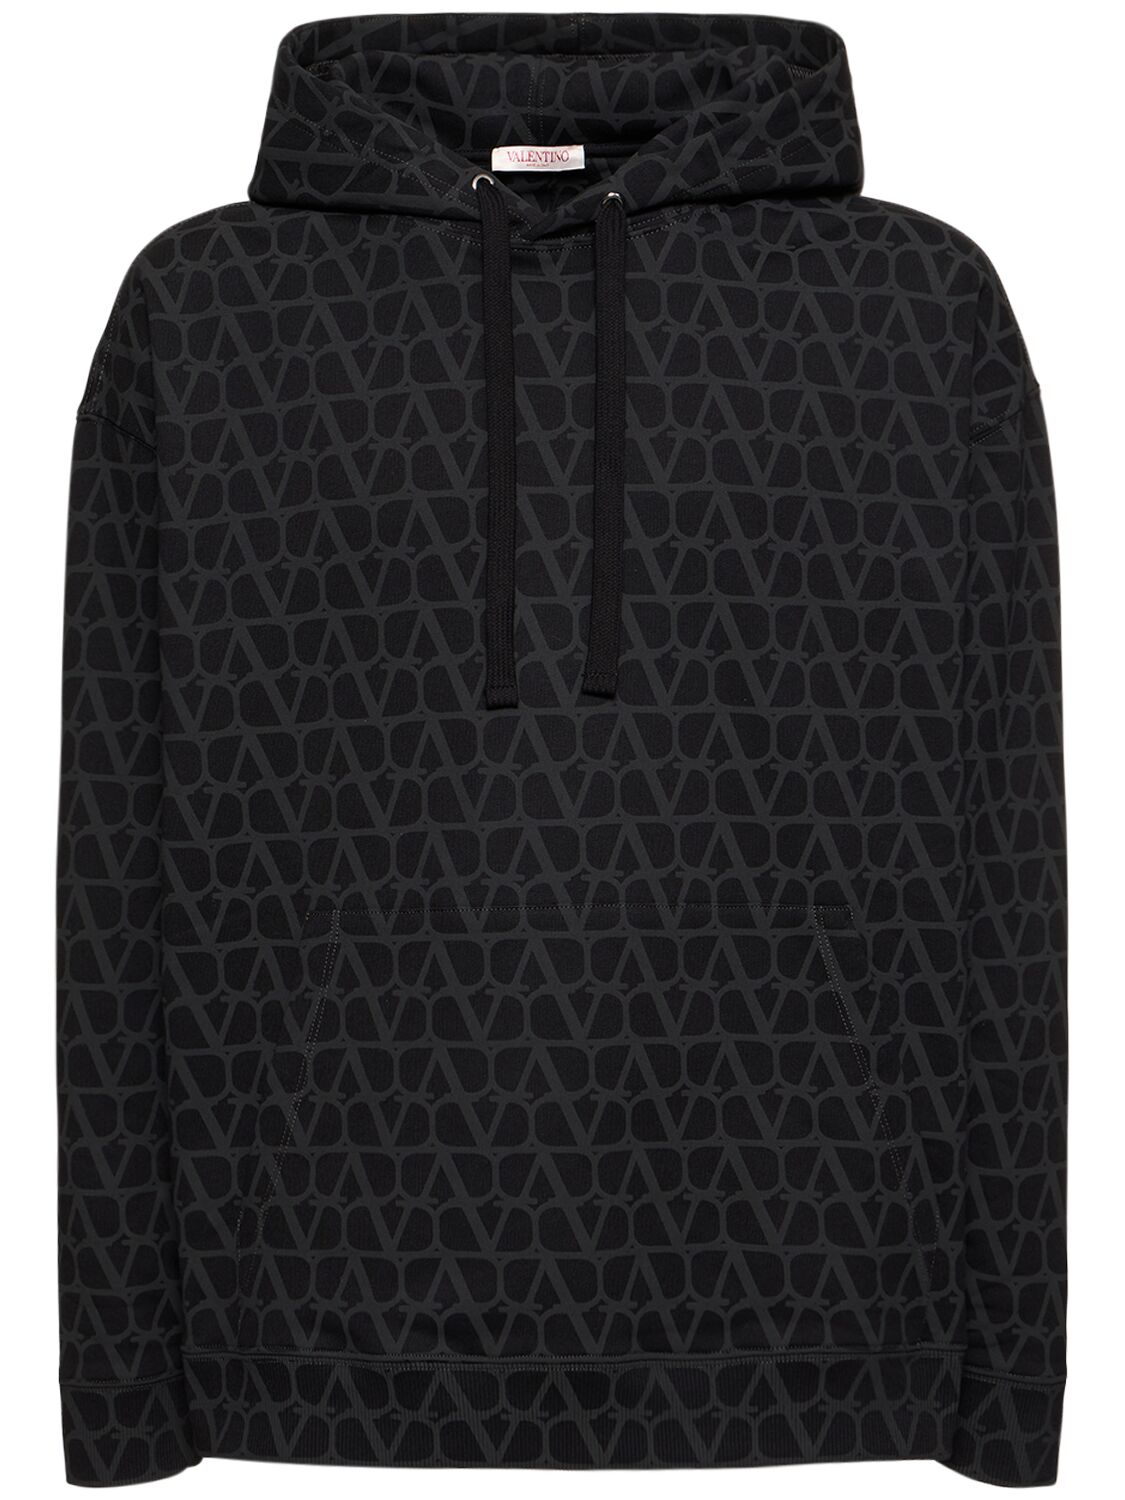 Toile Iconographe Hooded Sweatshirt